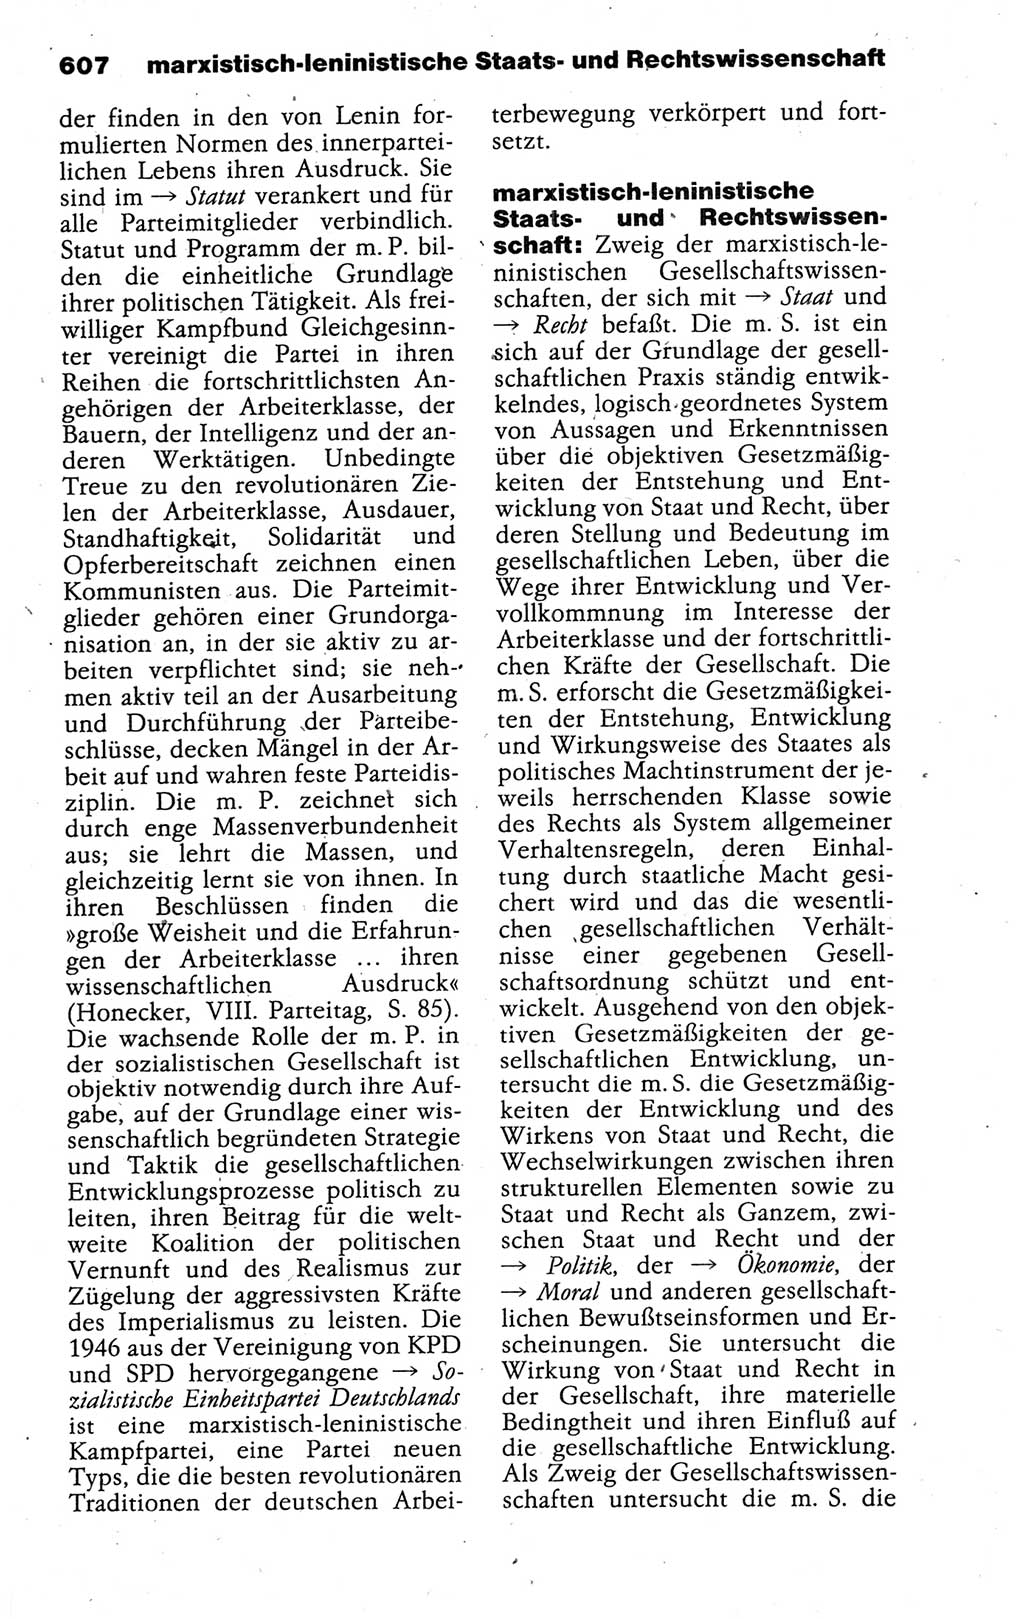 Kleines politisches Wörterbuch [Deutsche Demokratische Republik (DDR)] 1988, Seite 607 (Kl. pol. Wb. DDR 1988, S. 607)